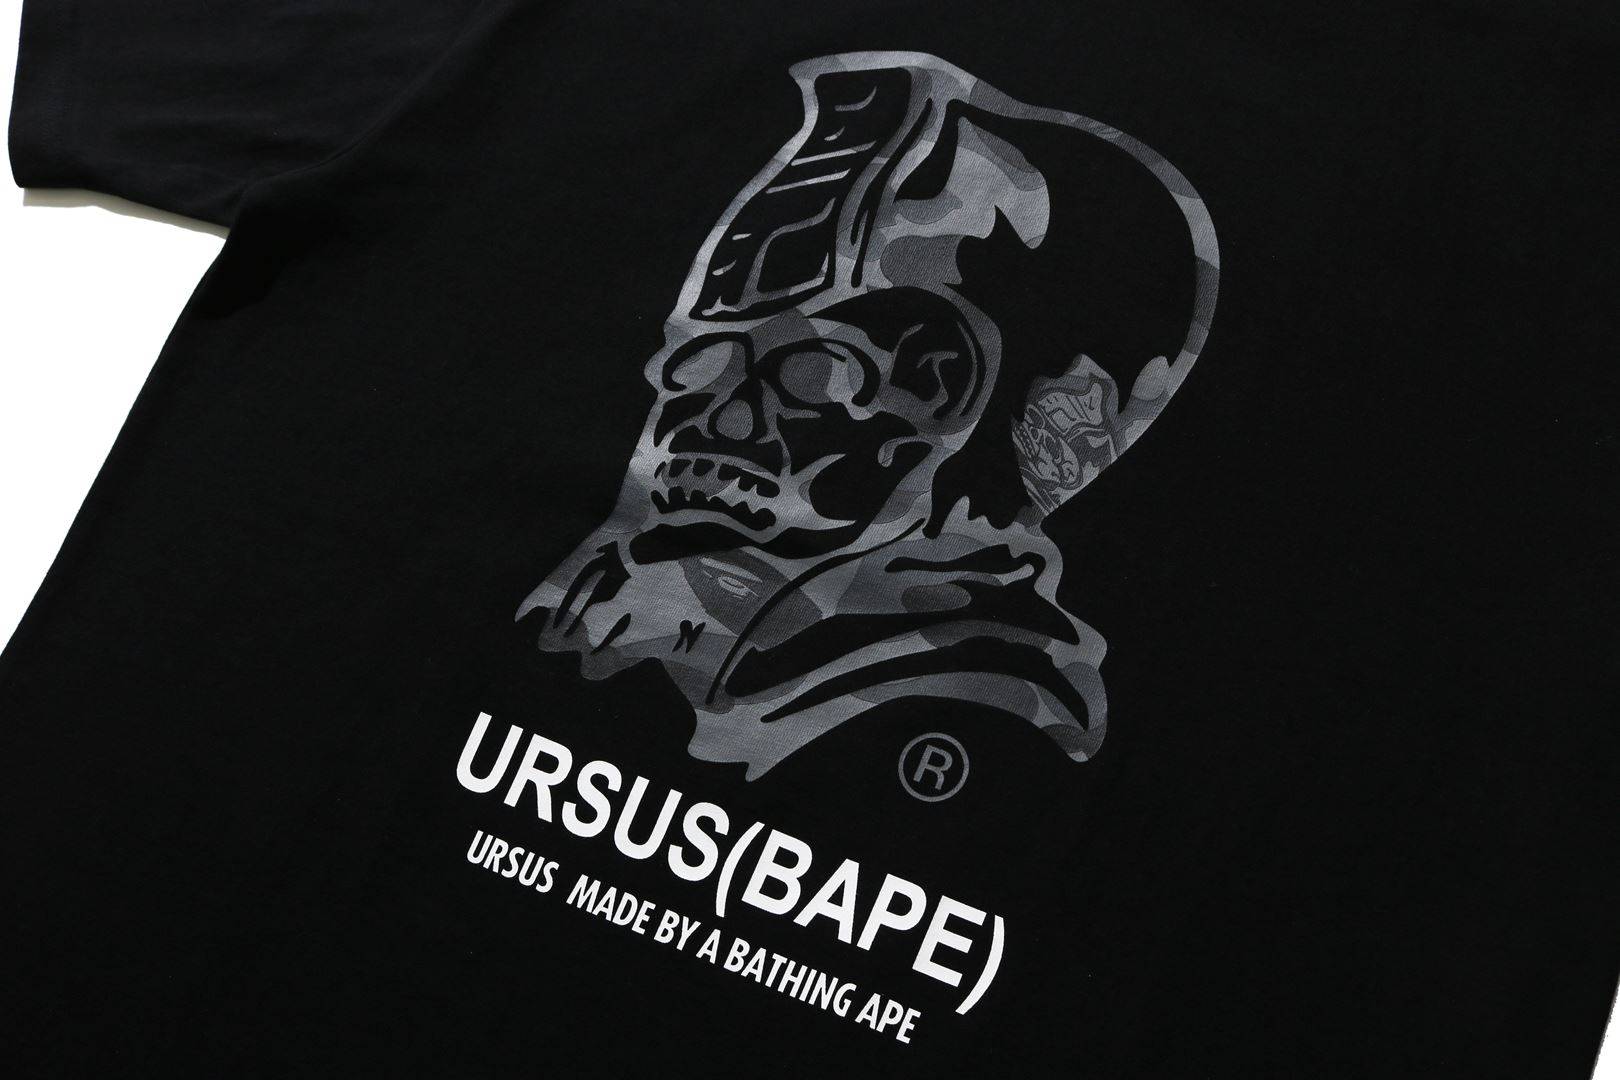 URSUS BAPE | bape.com